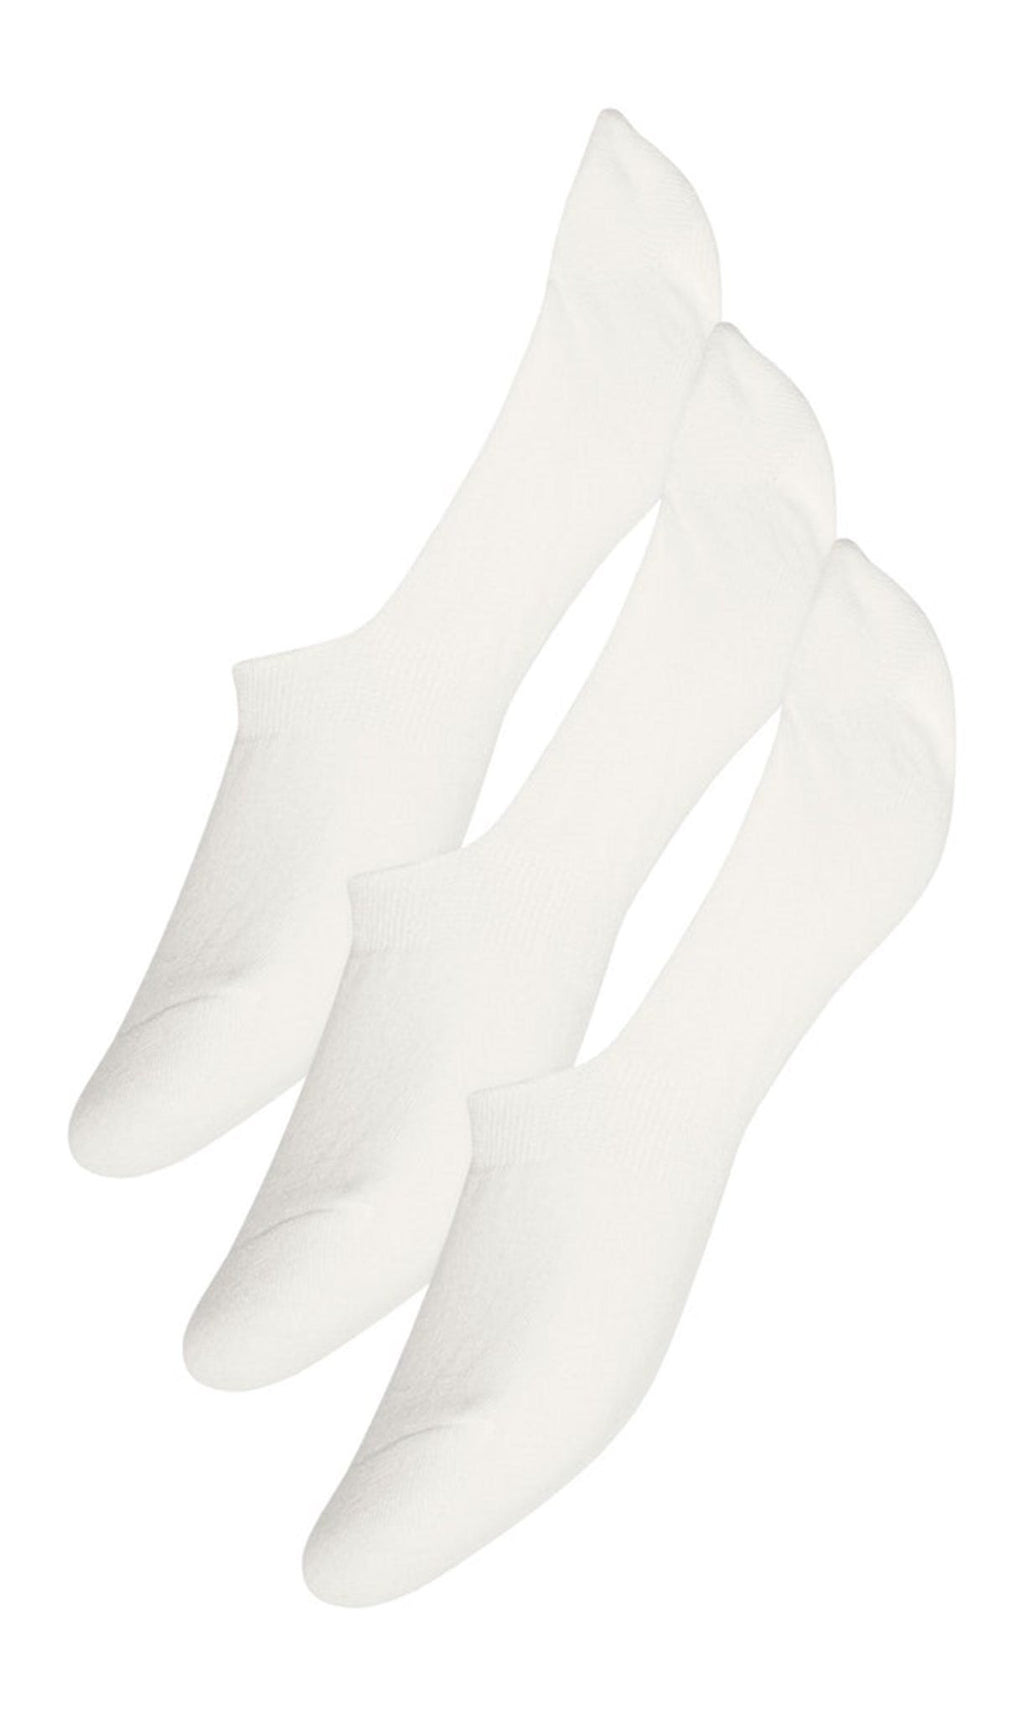 辛迪袜子3包 - 白色